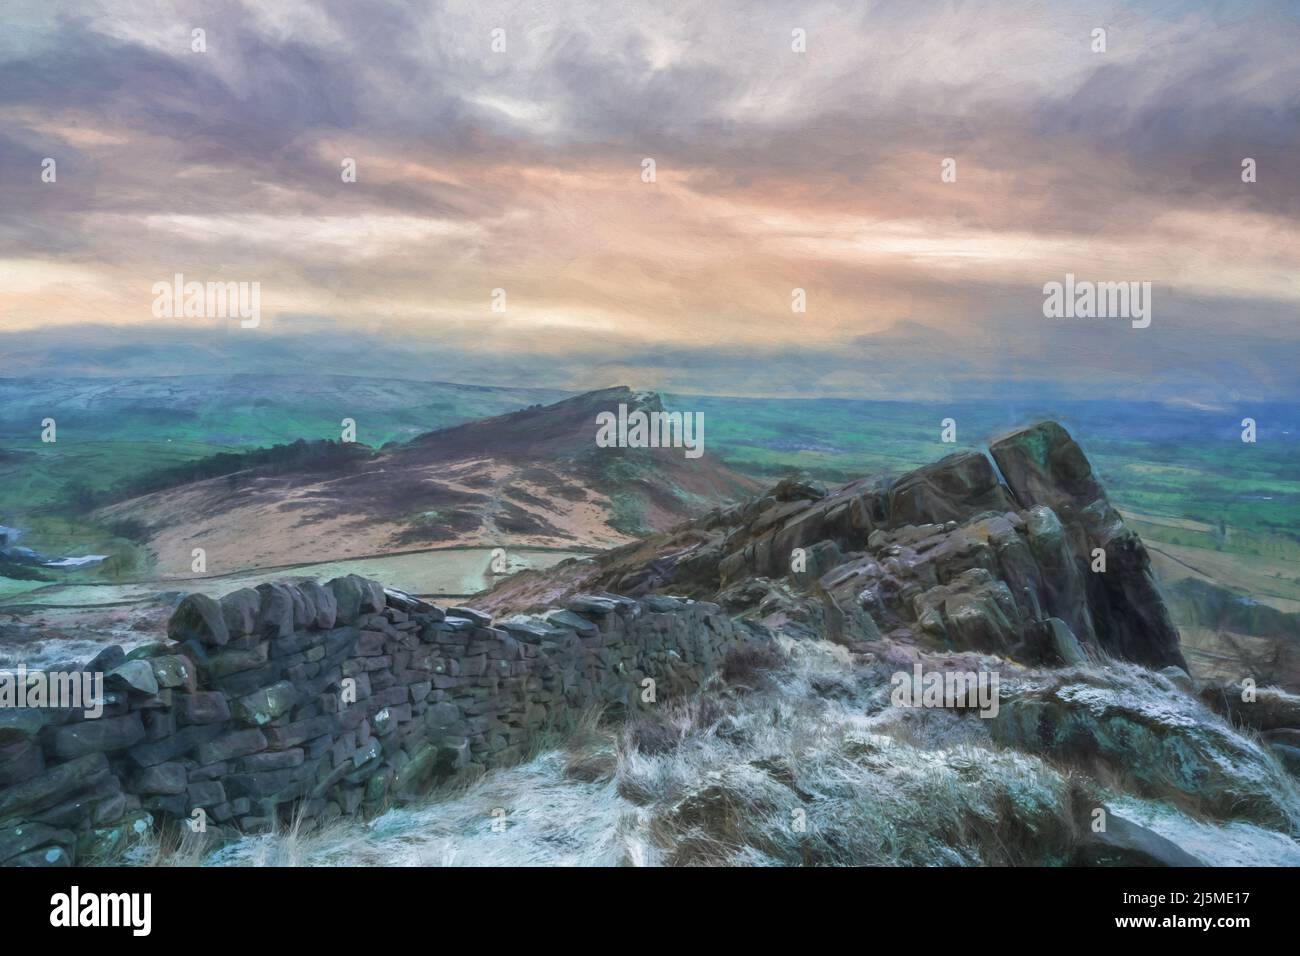 Beaux-arts, œuvres d'art. Peinture numérique à l'huile d'une vue panoramique depuis les cafards, Staffordshire. Lever du soleil en hiver dans le parc national de Peak District, Royaume-Uni. Banque D'Images